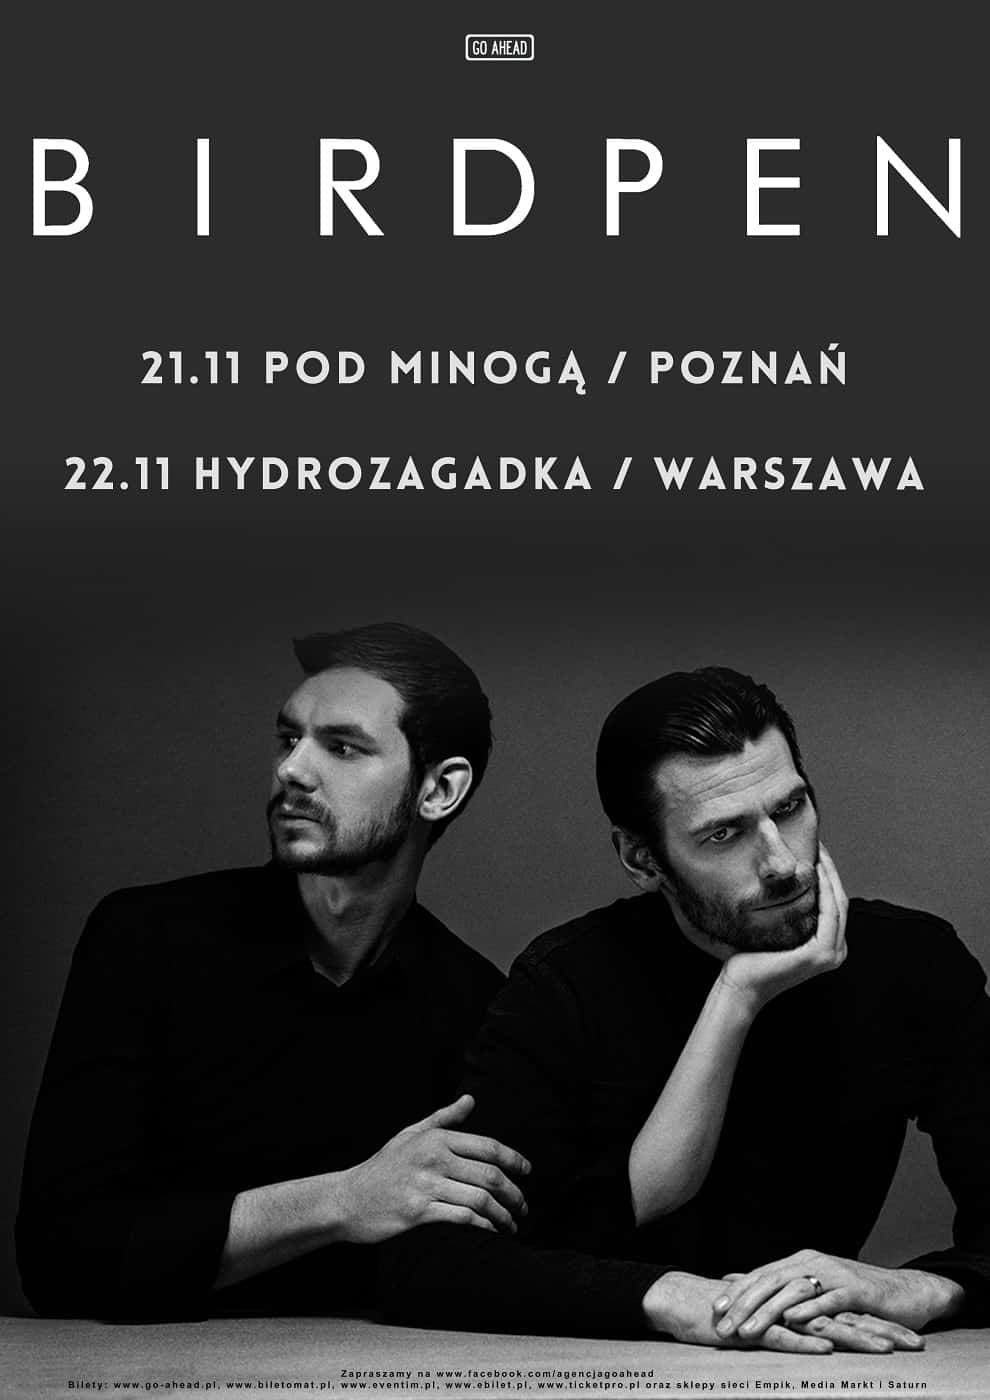 BirdPen na koncertach w Poznaniu i Warszawie!